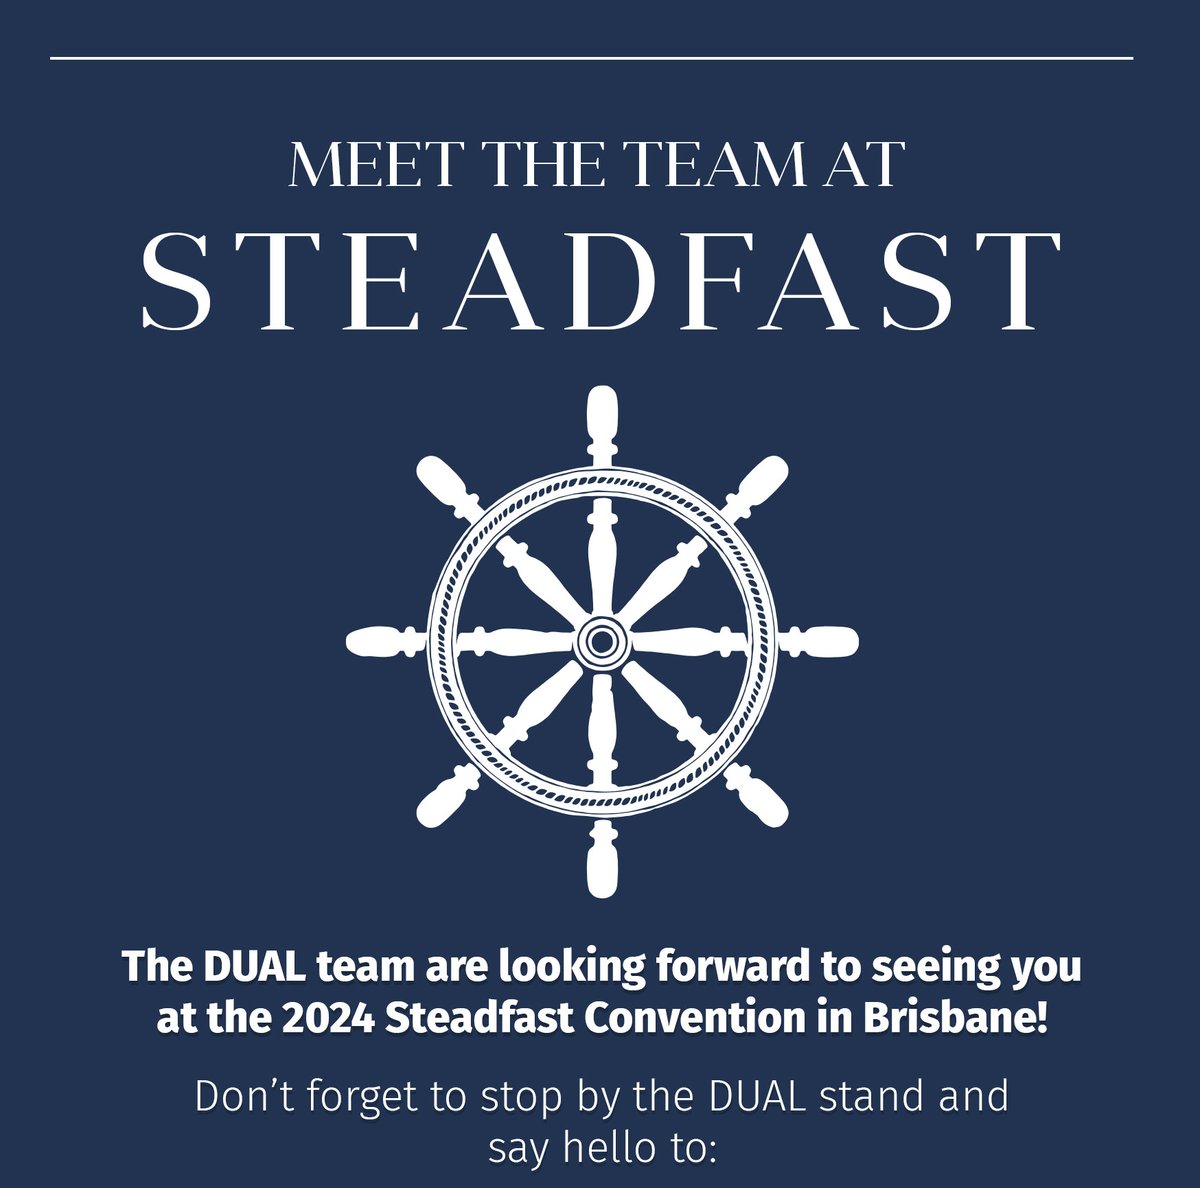 Steadfast-meet-the-team-edm-24_01-1